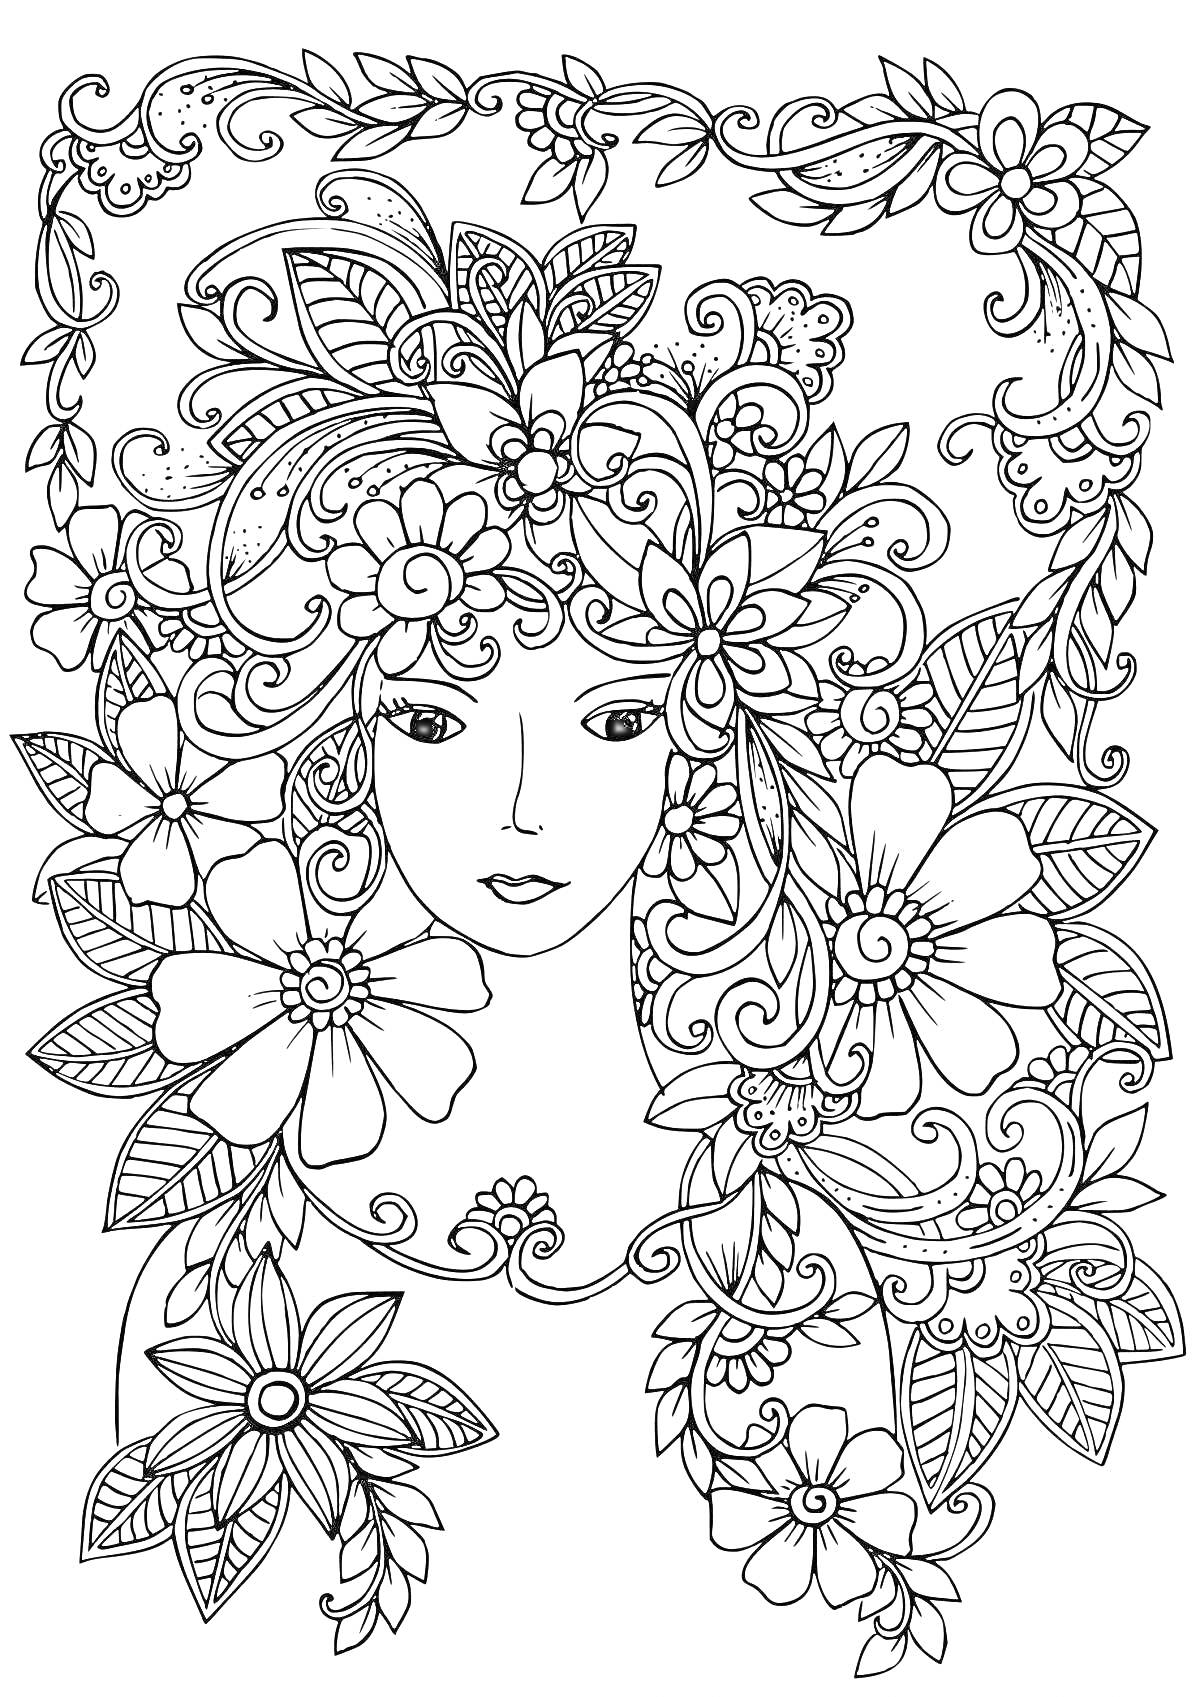 Раскраска девушка с цветами в волосах в орнаменте из листьев и узоров